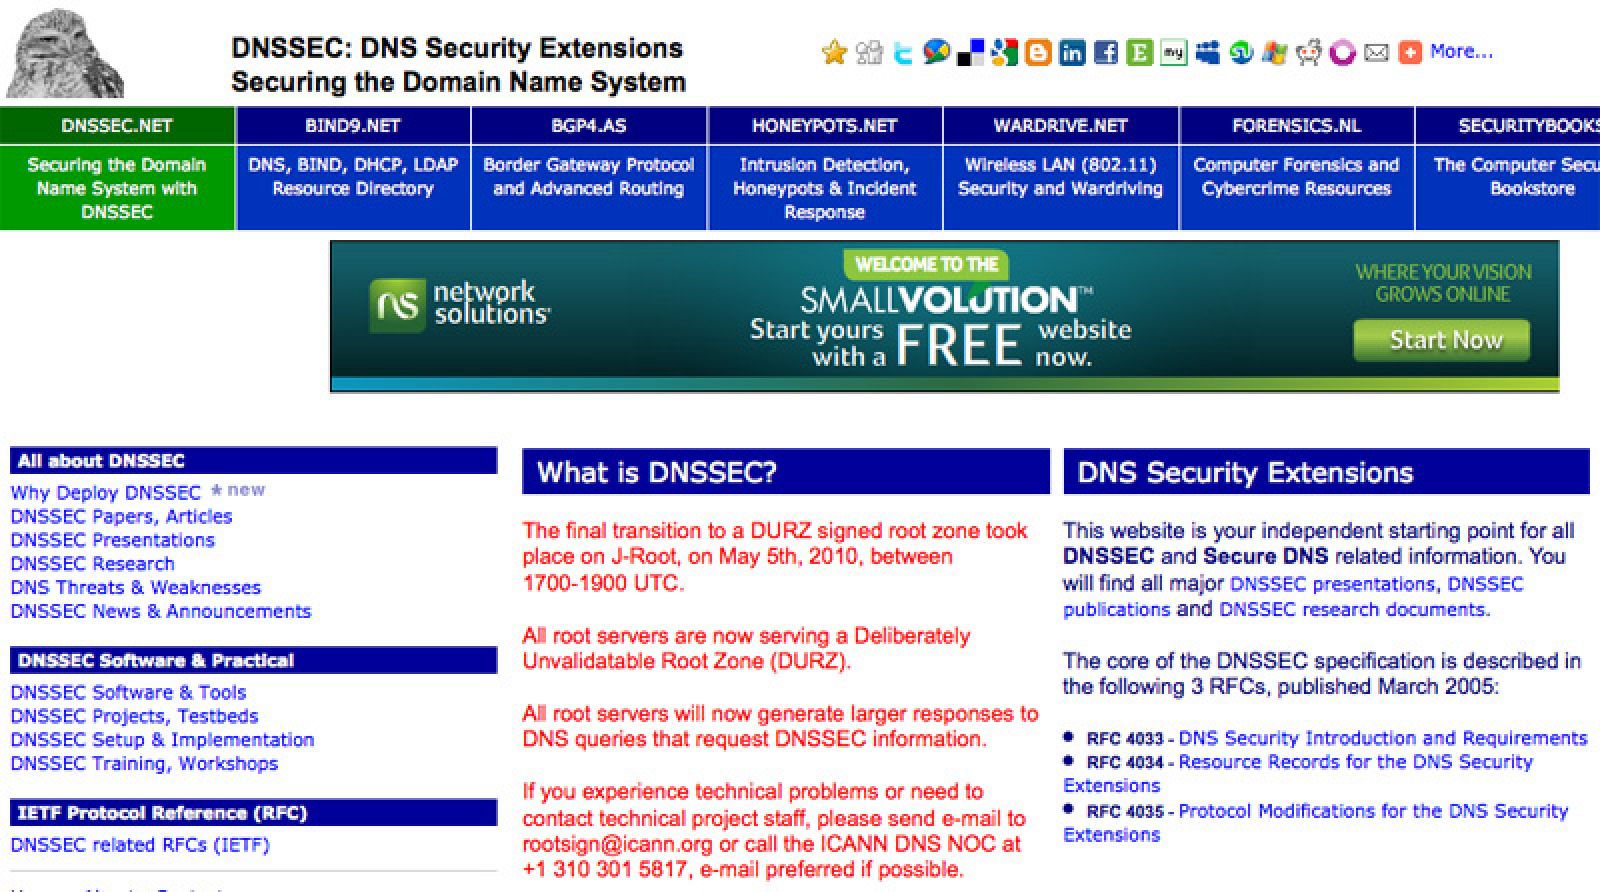 El principal objetivo, impulsar el desarrollo e implementación del DNSSEC, unas extensiones del DNS que garantizan la seguridad de la Red.